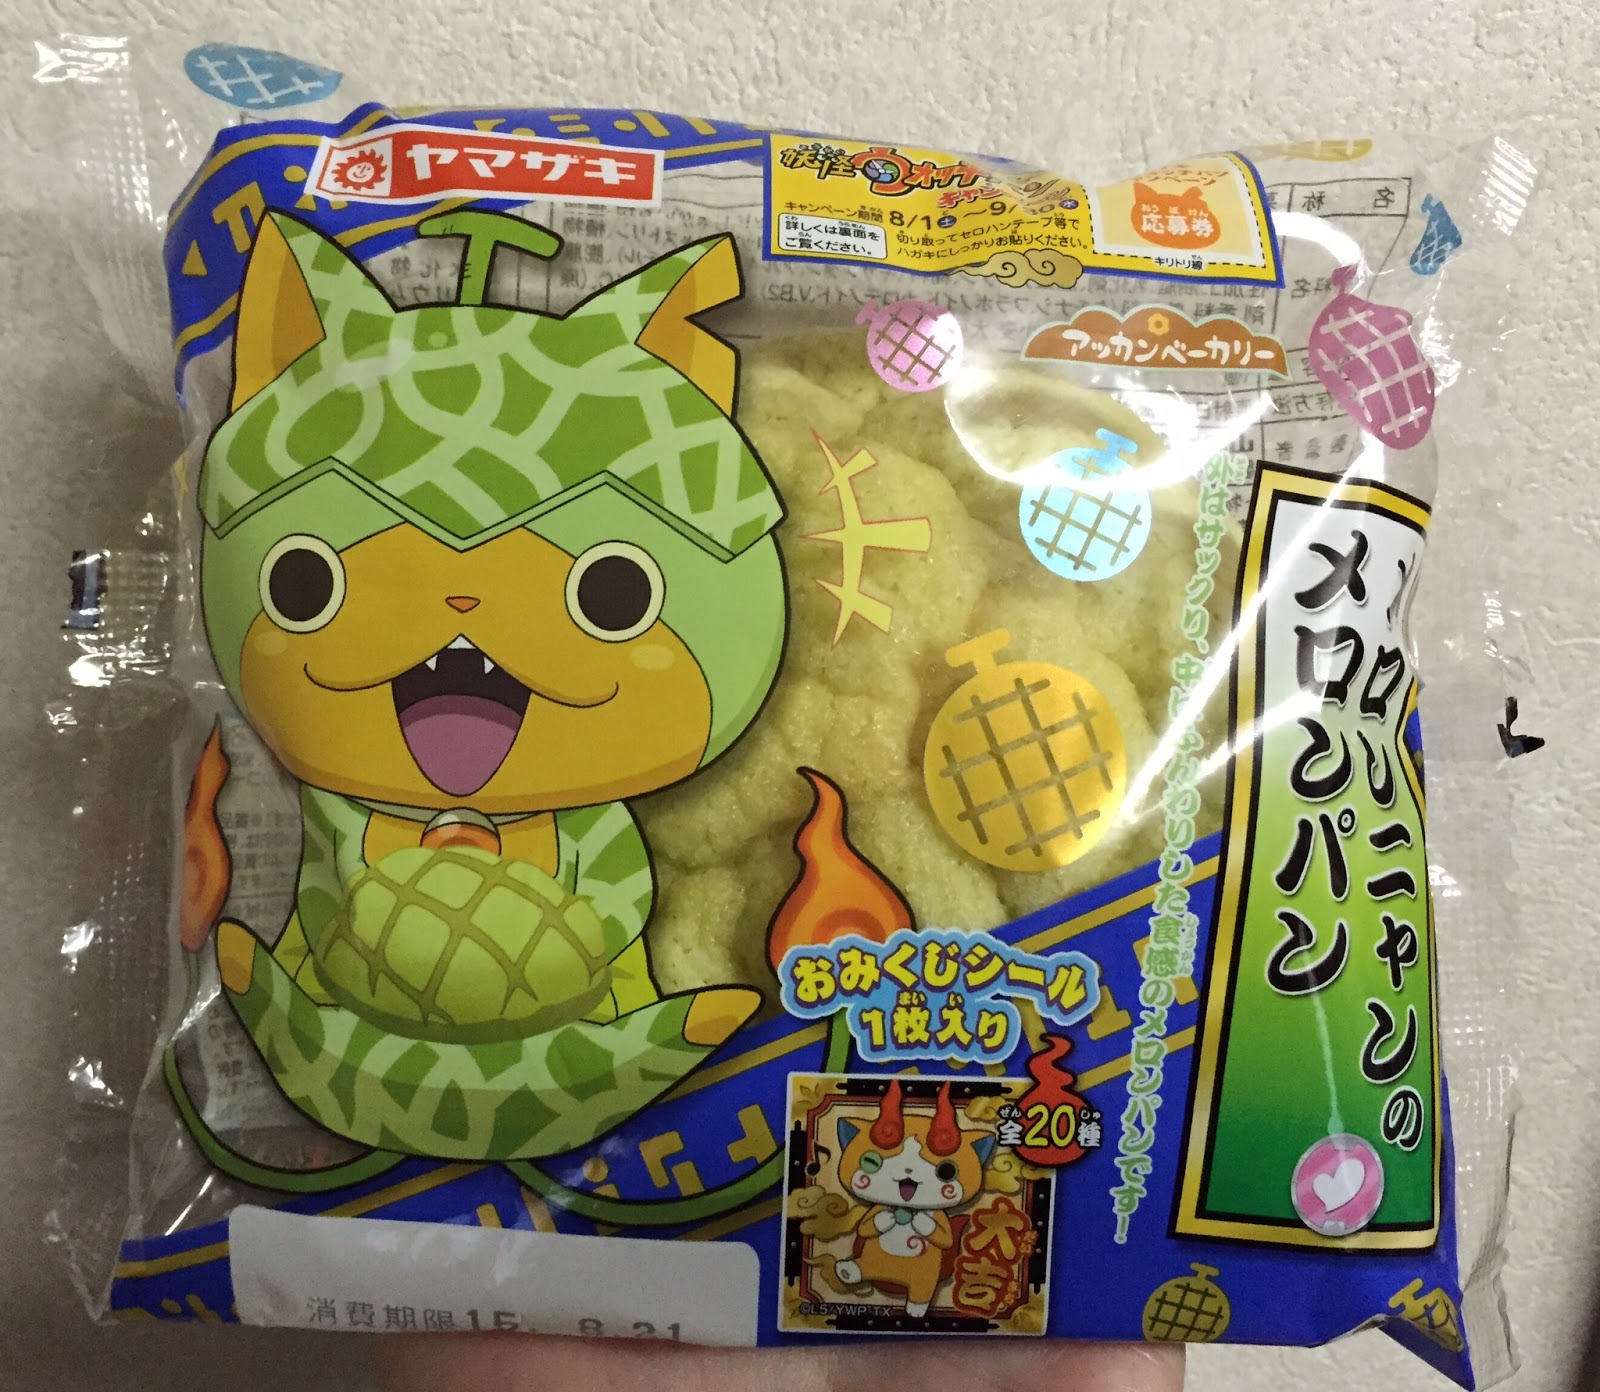 I M Made Of Sugar Chihiro S Food Blog Melonnyan S Melon Pan メロンニャン のメロンパン